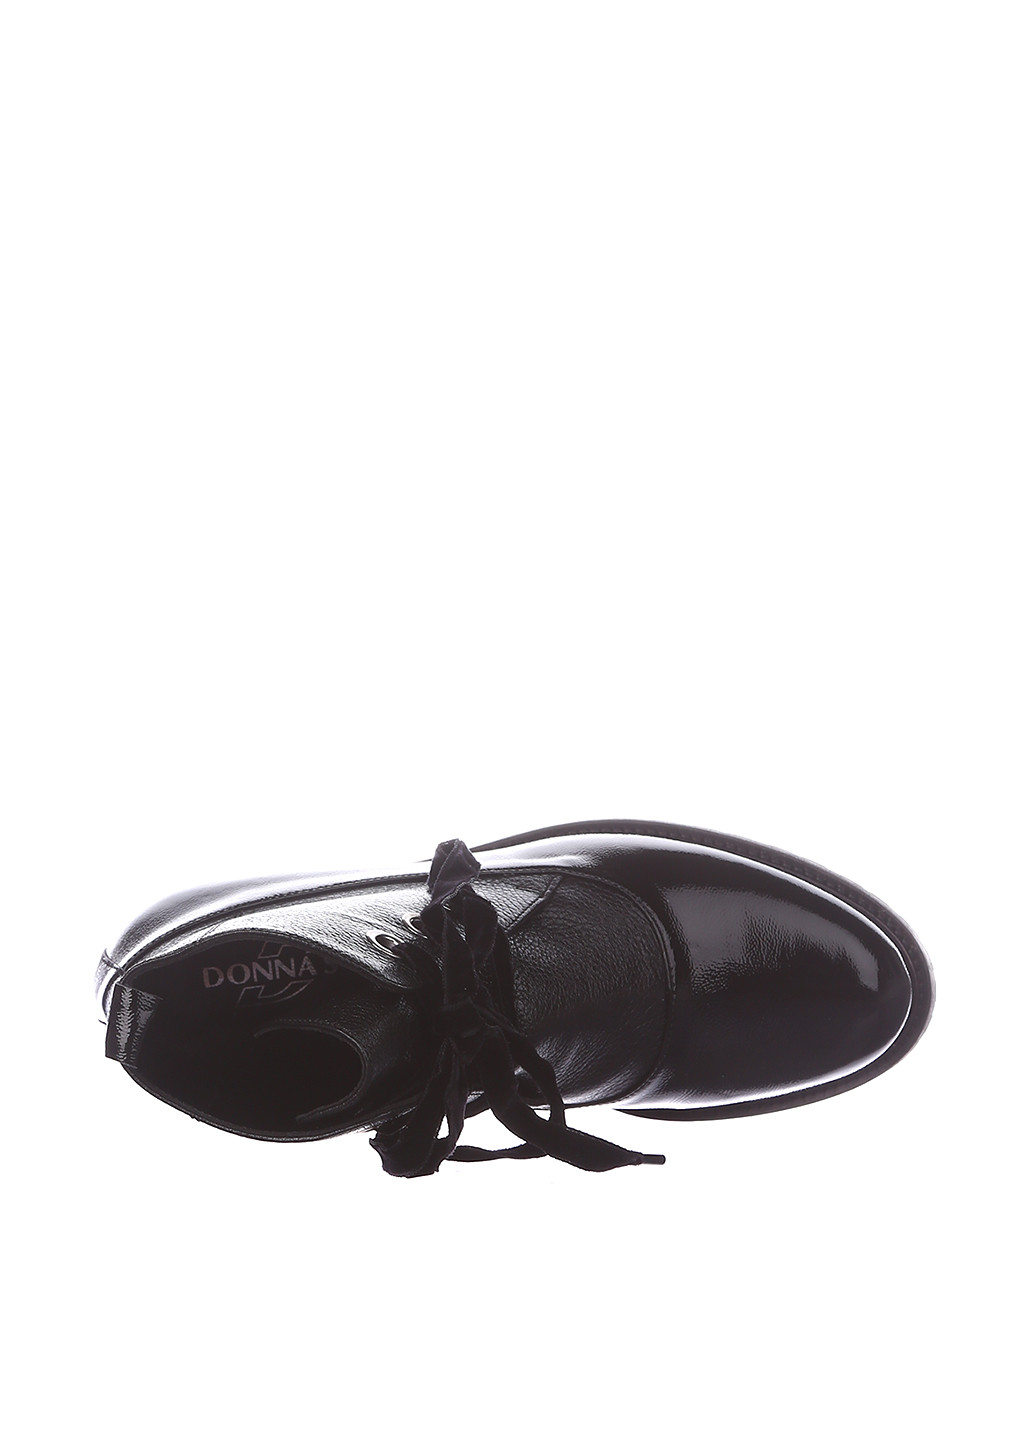 Осенние ботинки Donna Soft с металлическими вставками